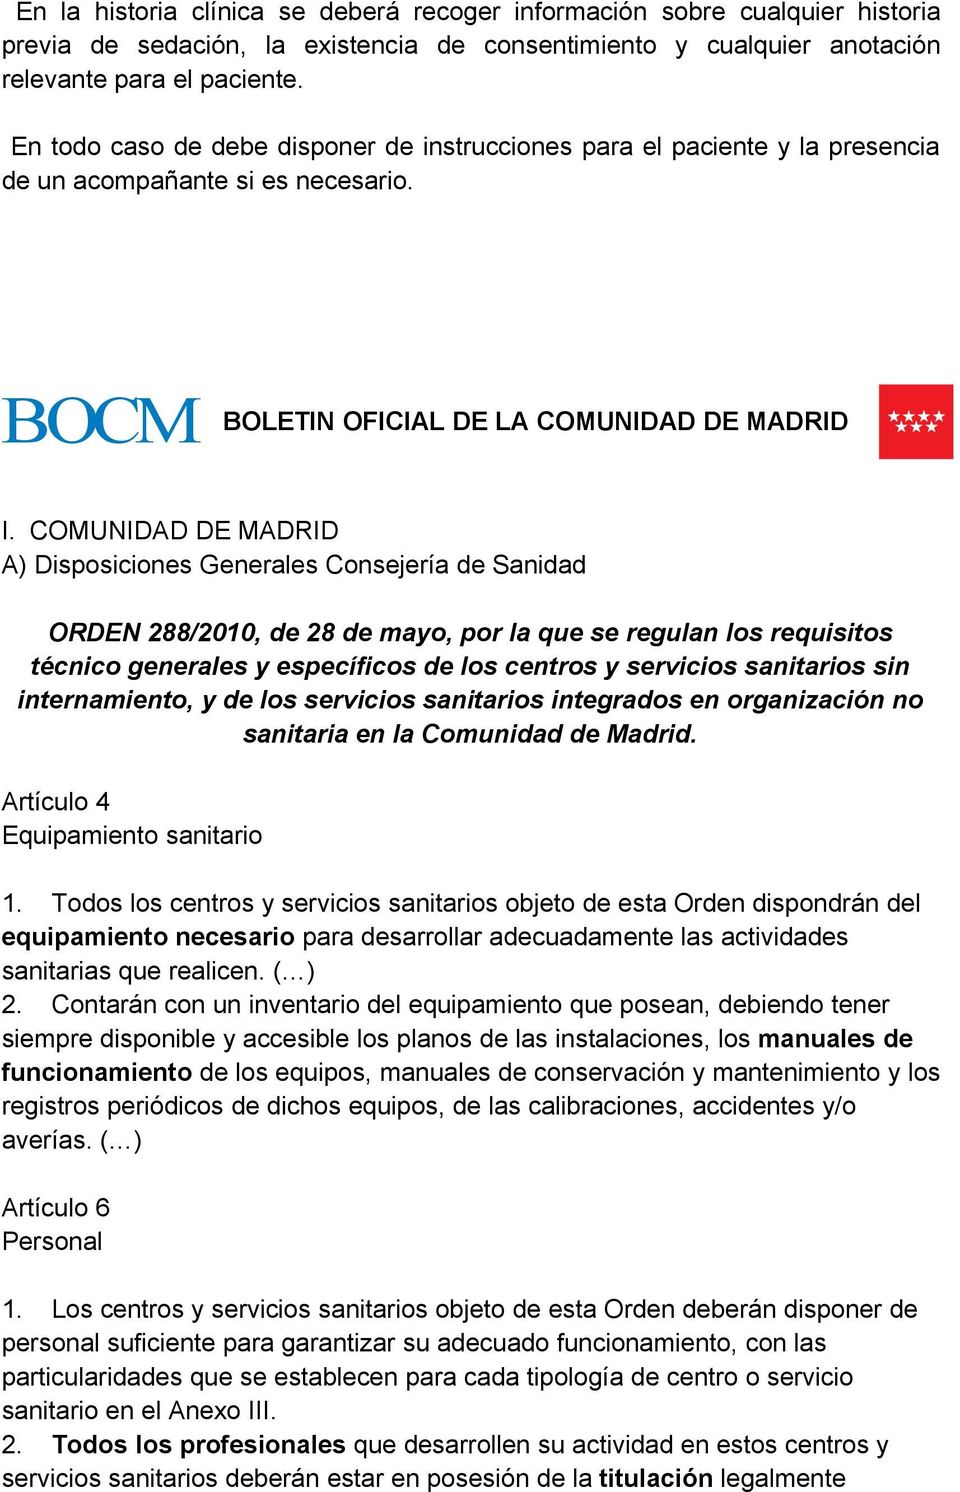 COMUNIDAD DE MADRID A) Disposiciones Generales Consejería de Sanidad ORDEN 288/2010, de 28 de mayo, por la que se regulan los requisitos técnico generales y específicos de los centros y servicios